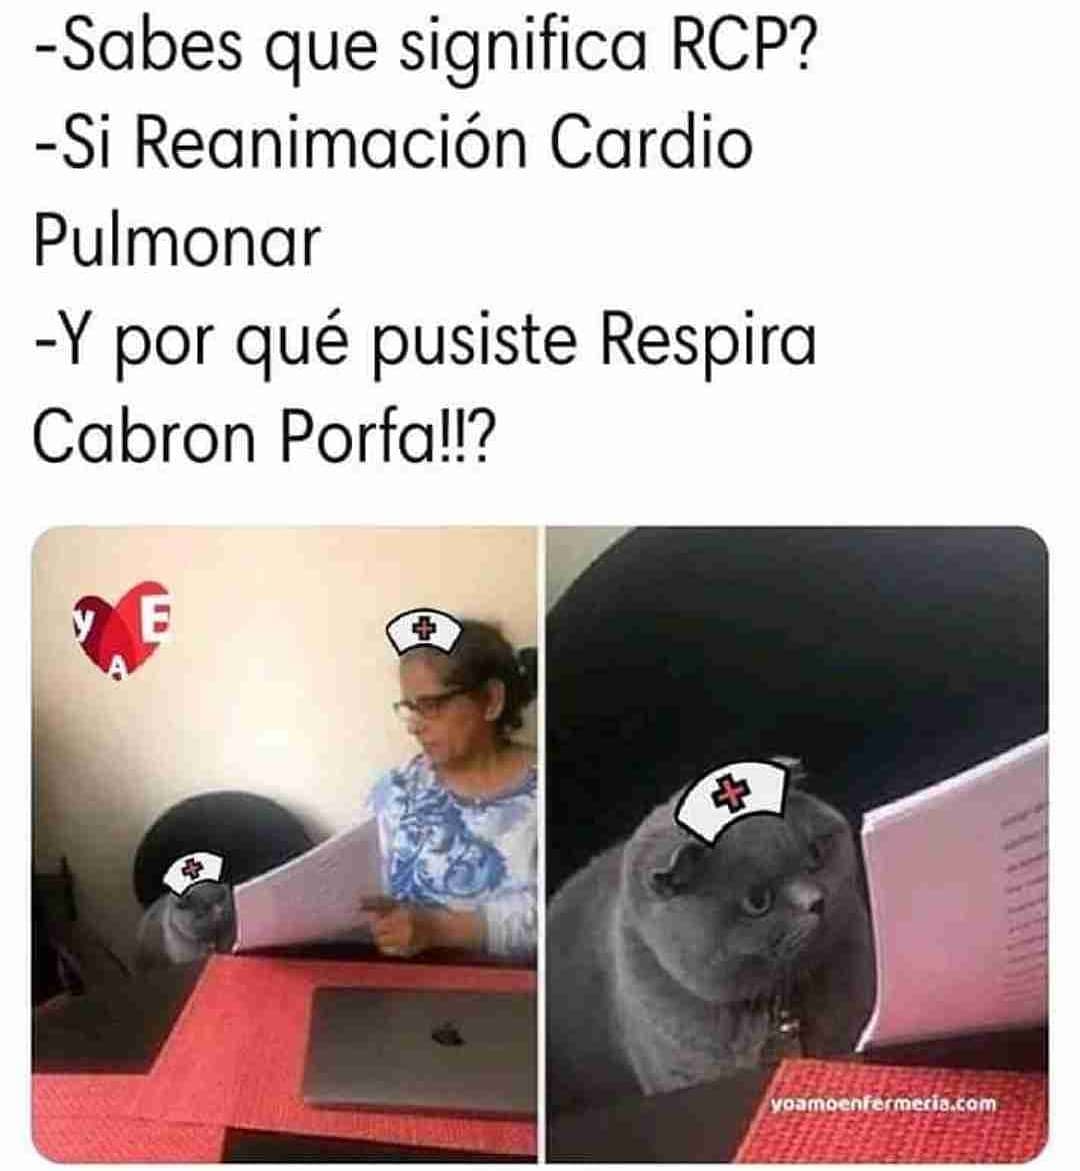 Sabes que significa RCP?  Si Reanimación Cardio Pulmonar.  Y por qué pusiste Respira Cabron Porfa!!?